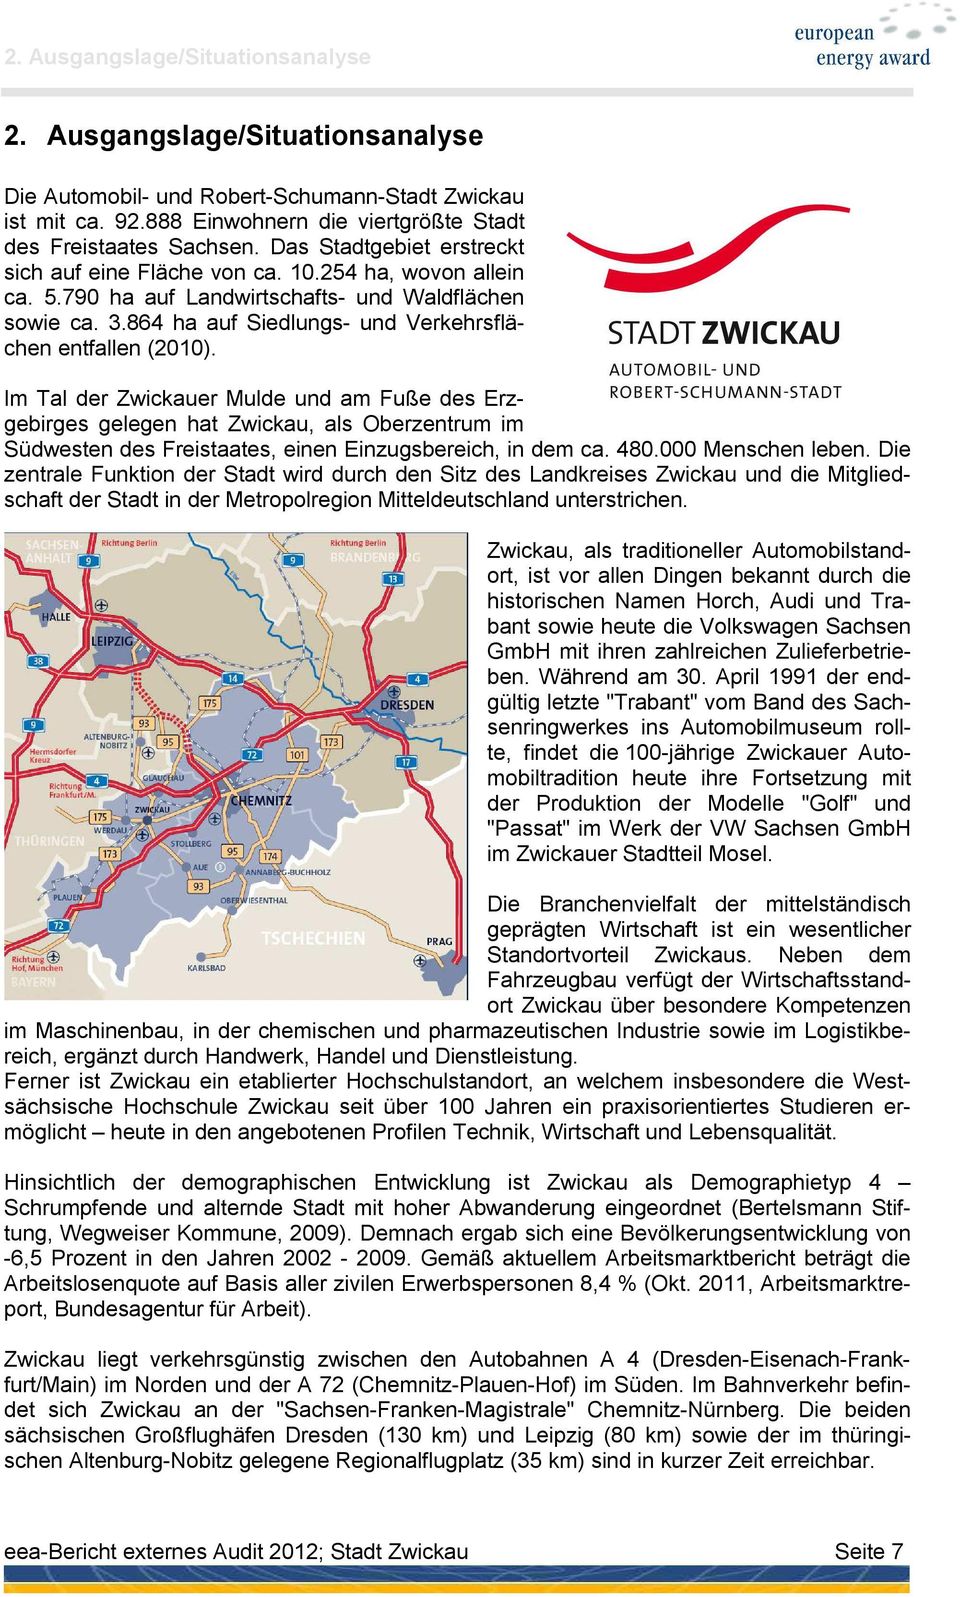 Im Tal der Zwickauer Mulde und am Fuße des Erzgebirges gelegen hat Zwickau, als Oberzentrum im Südwesten des Freistaates, einen Einzugsbereich, in dem ca. 480.000 Menschen leben.